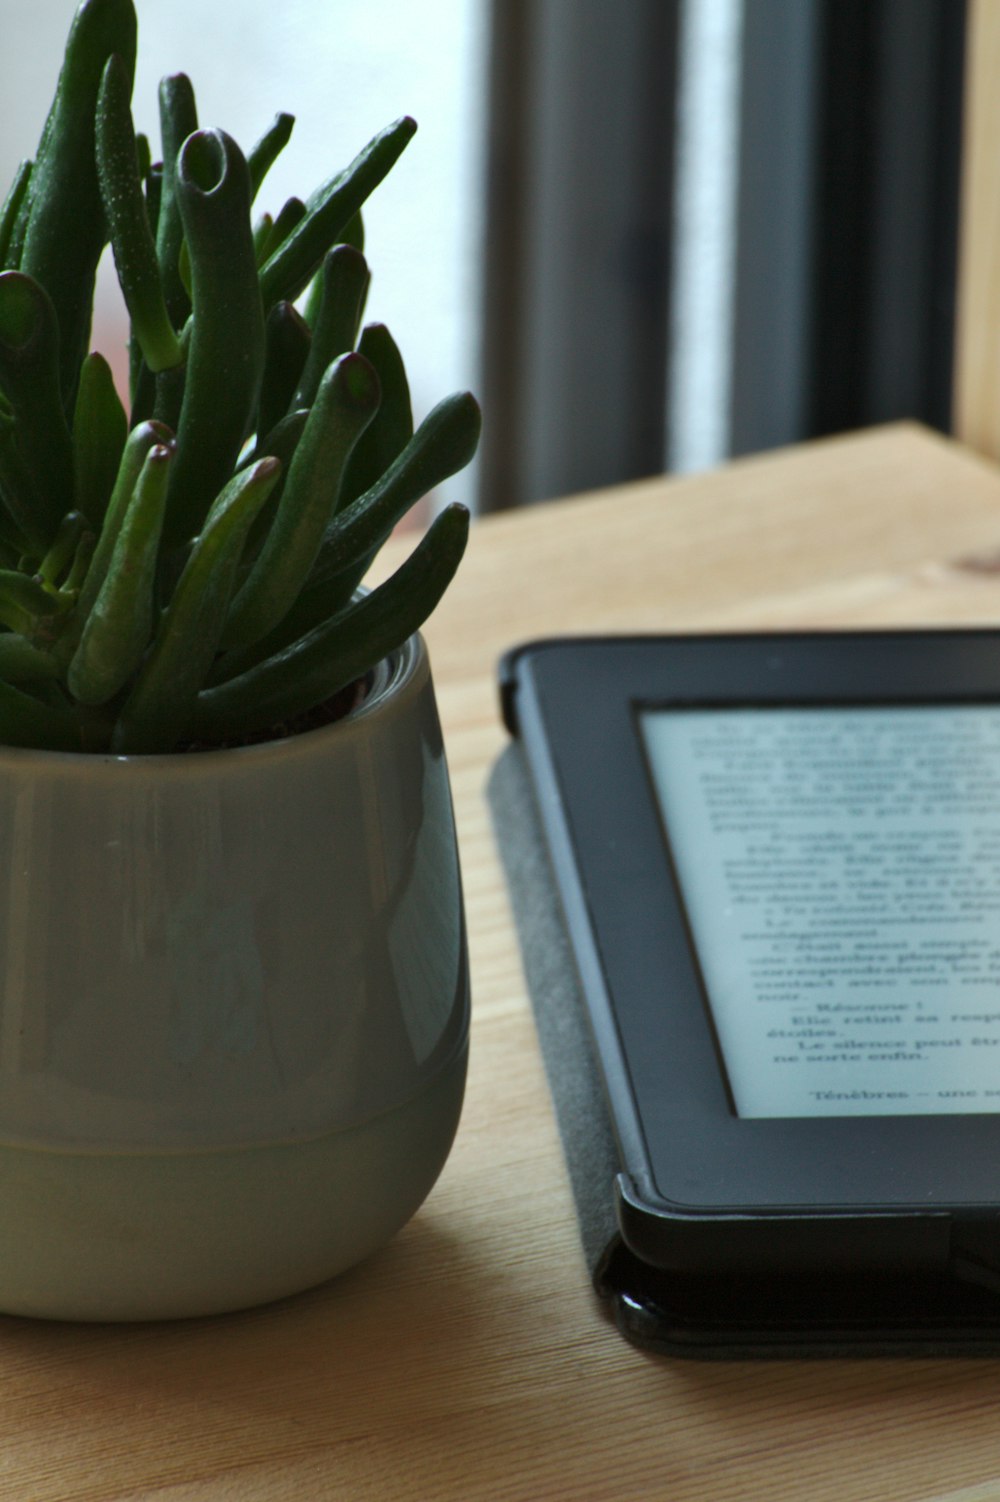 Lector de libros electrónicos negro junto a la planta de cactus verde